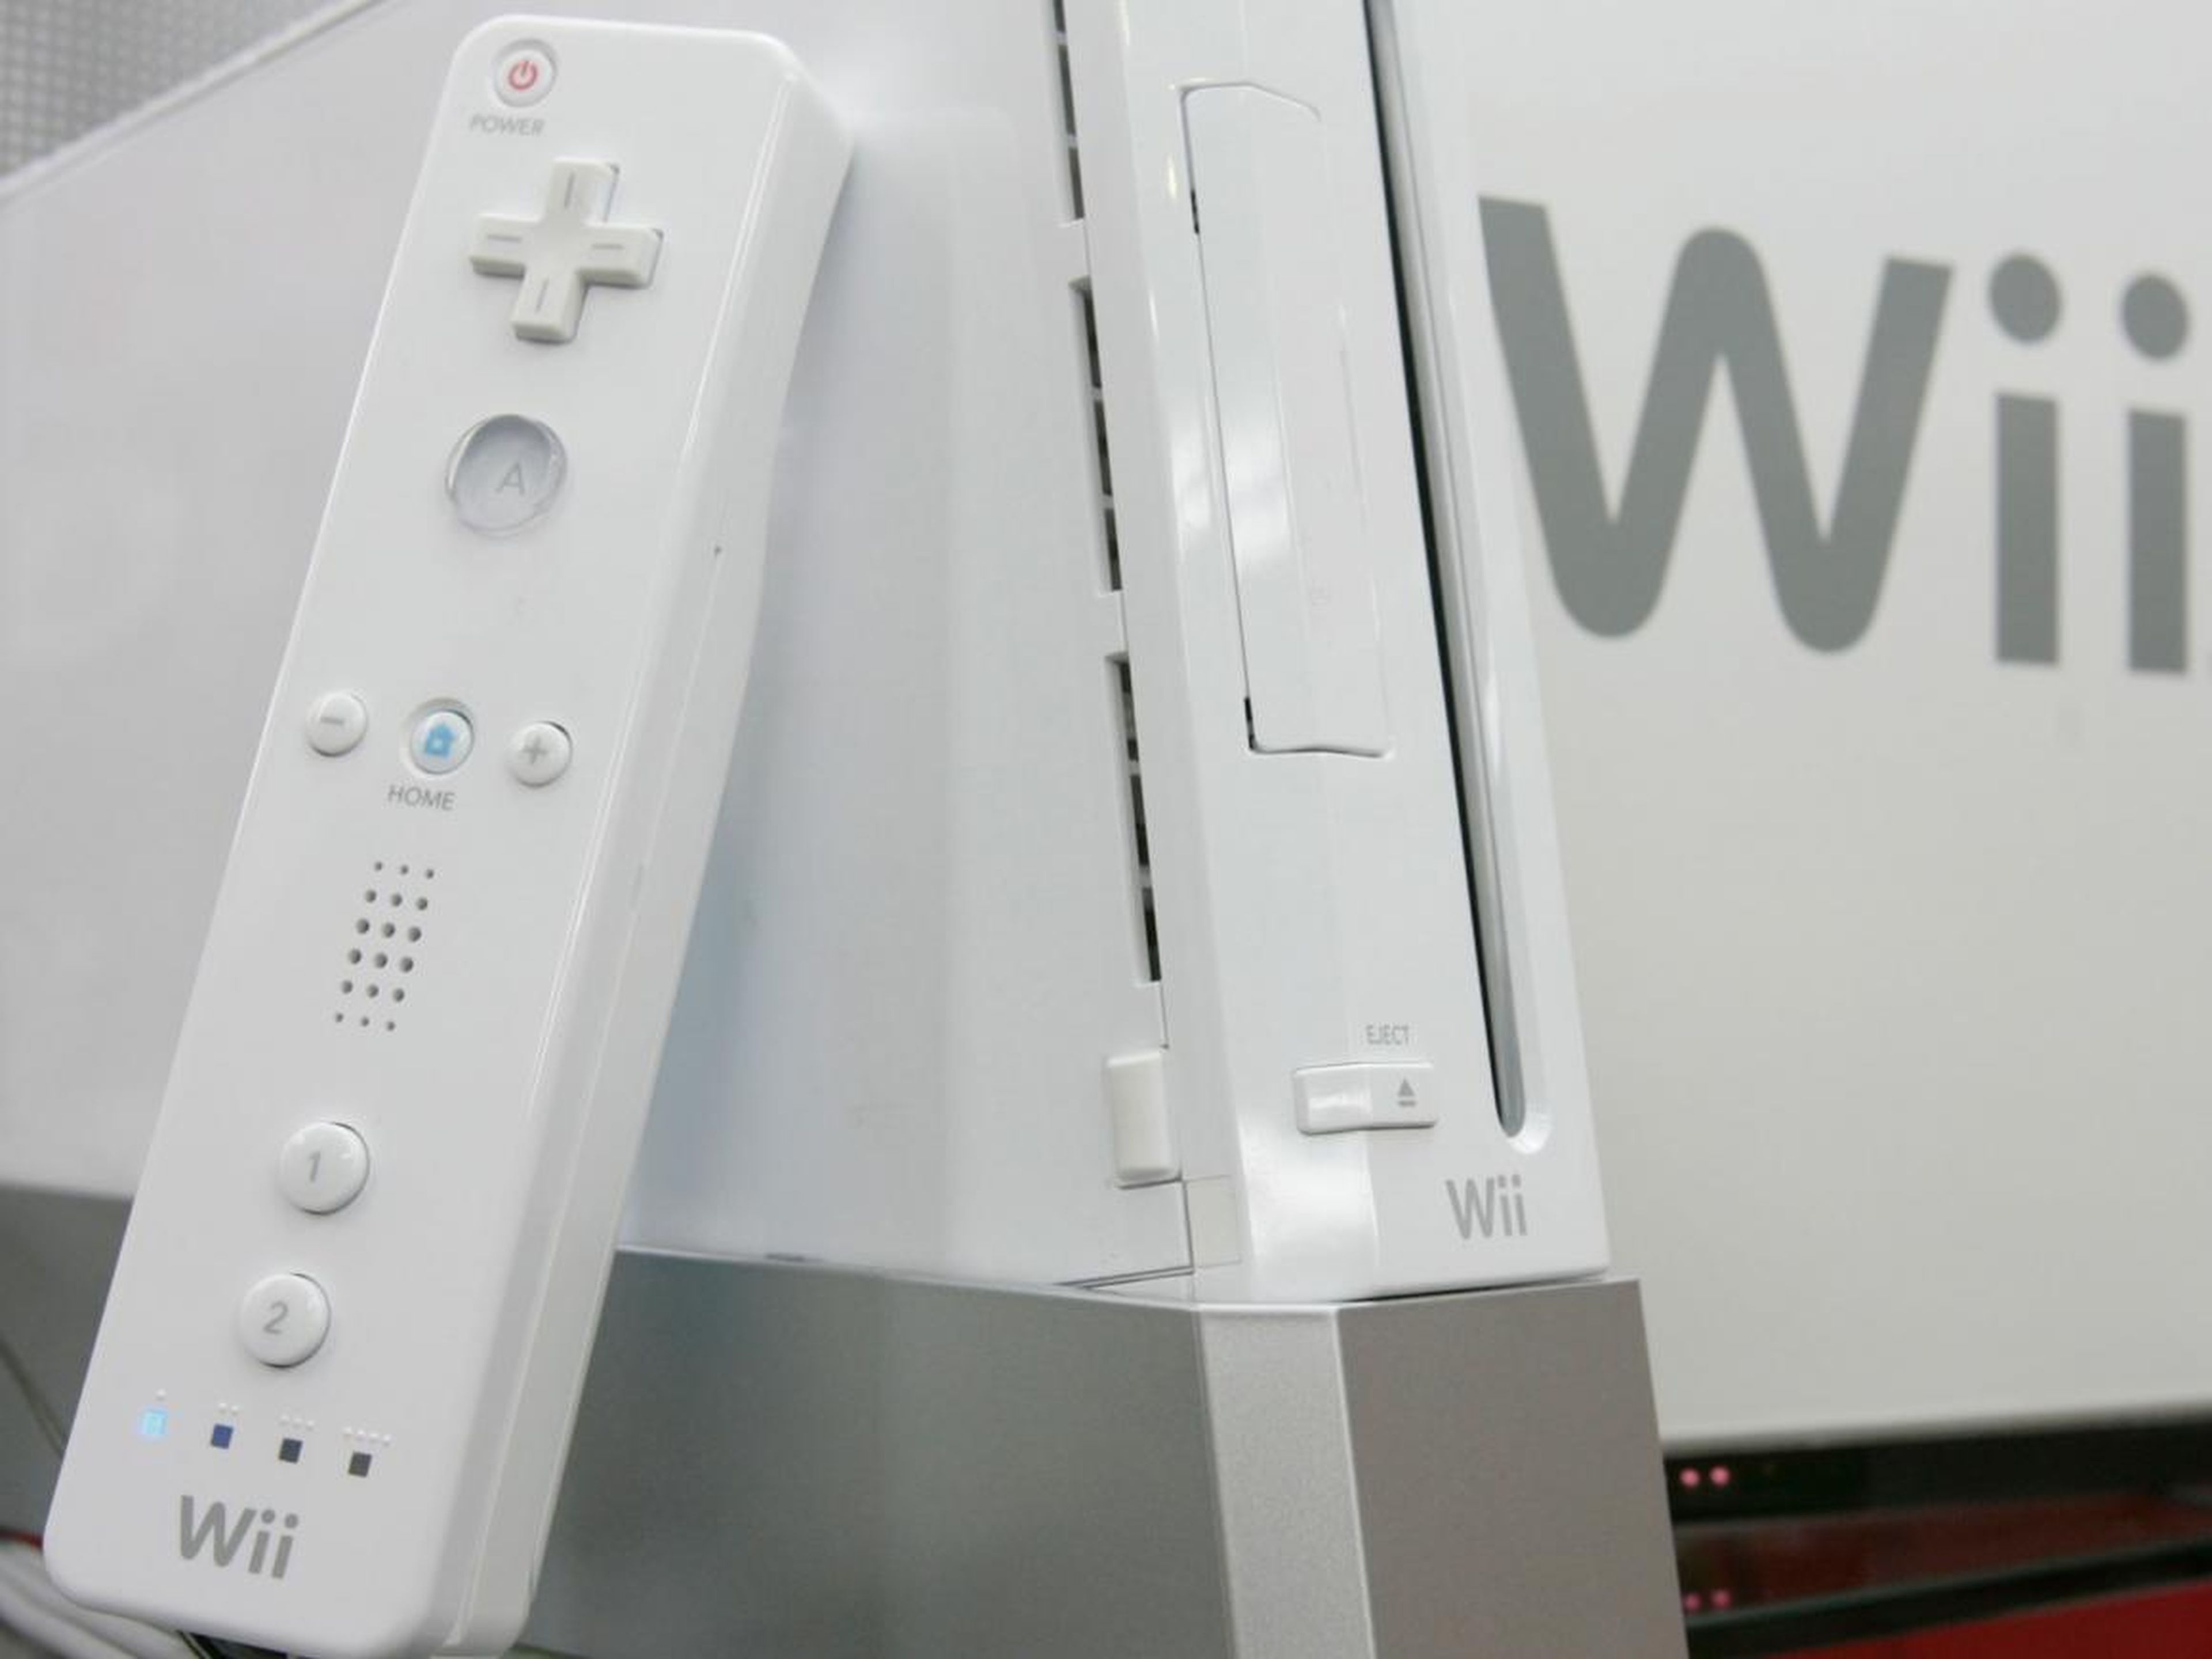 2006: Nintendo Wii